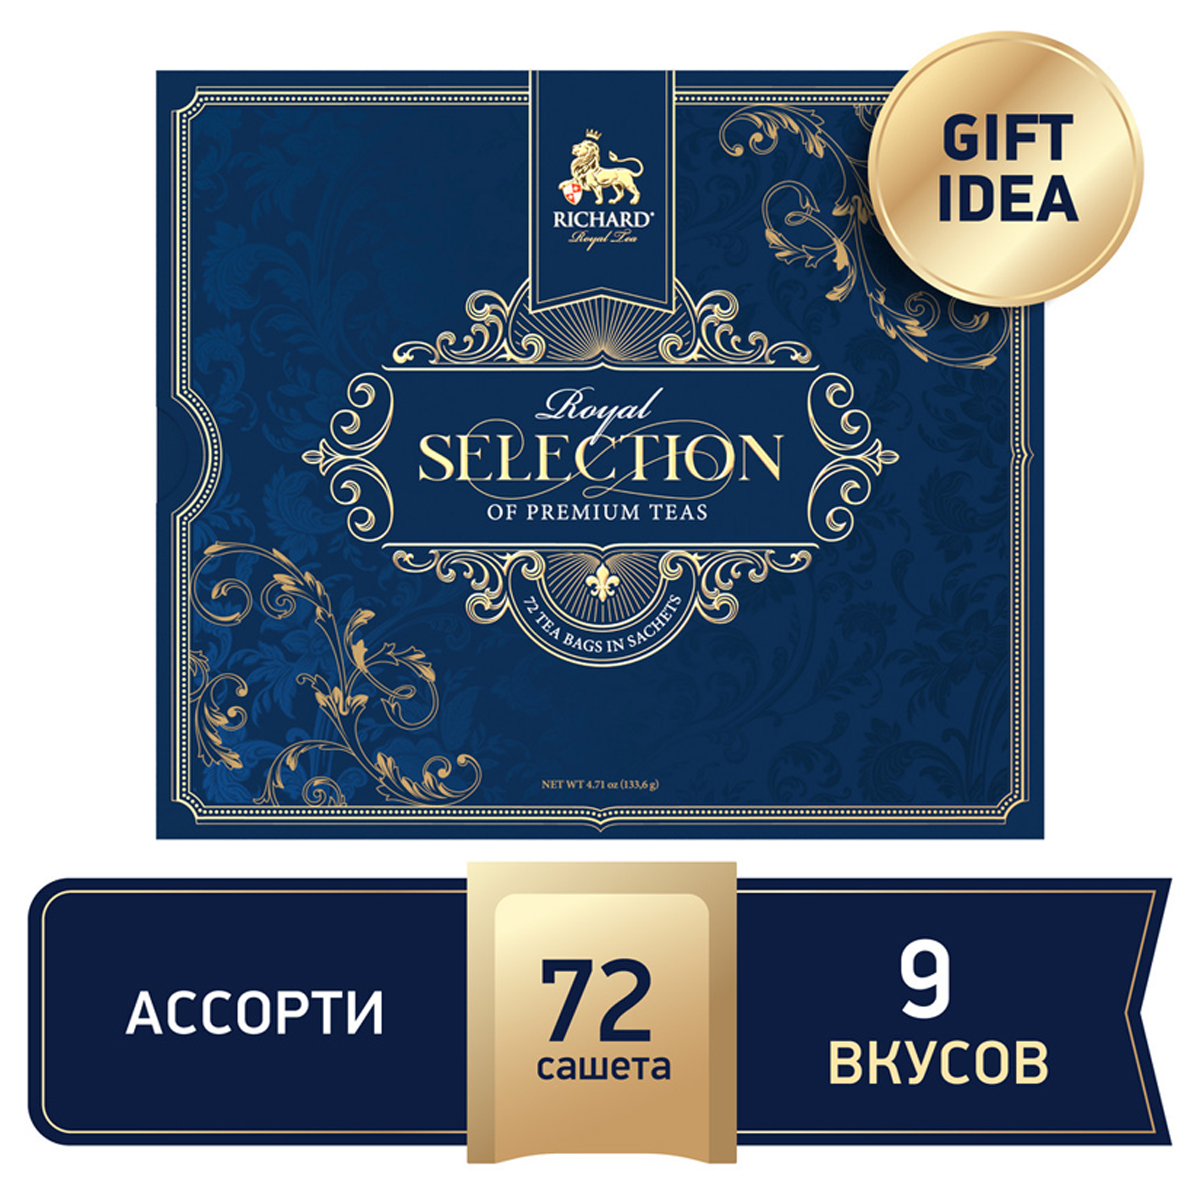 Подарочный набор чая Richard "Royal Selection of Premium Teas", 9 вкусов, 72 пакетика